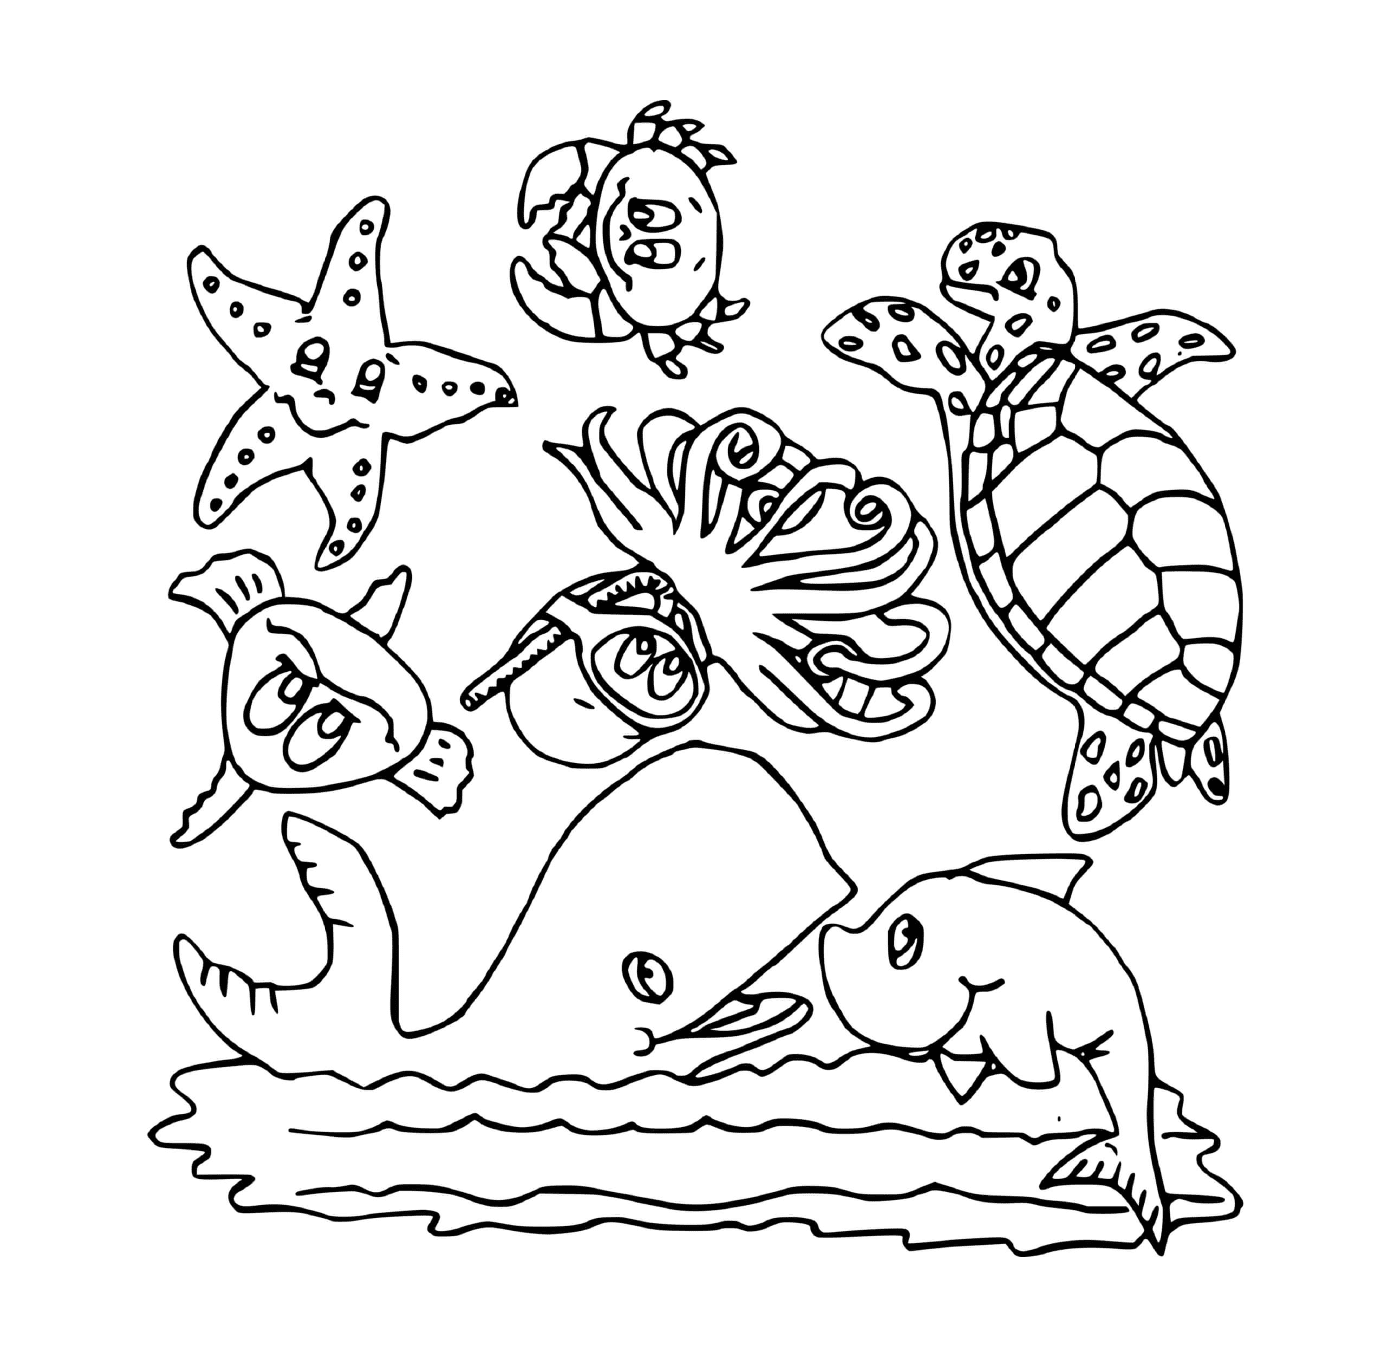  Various marine animals 